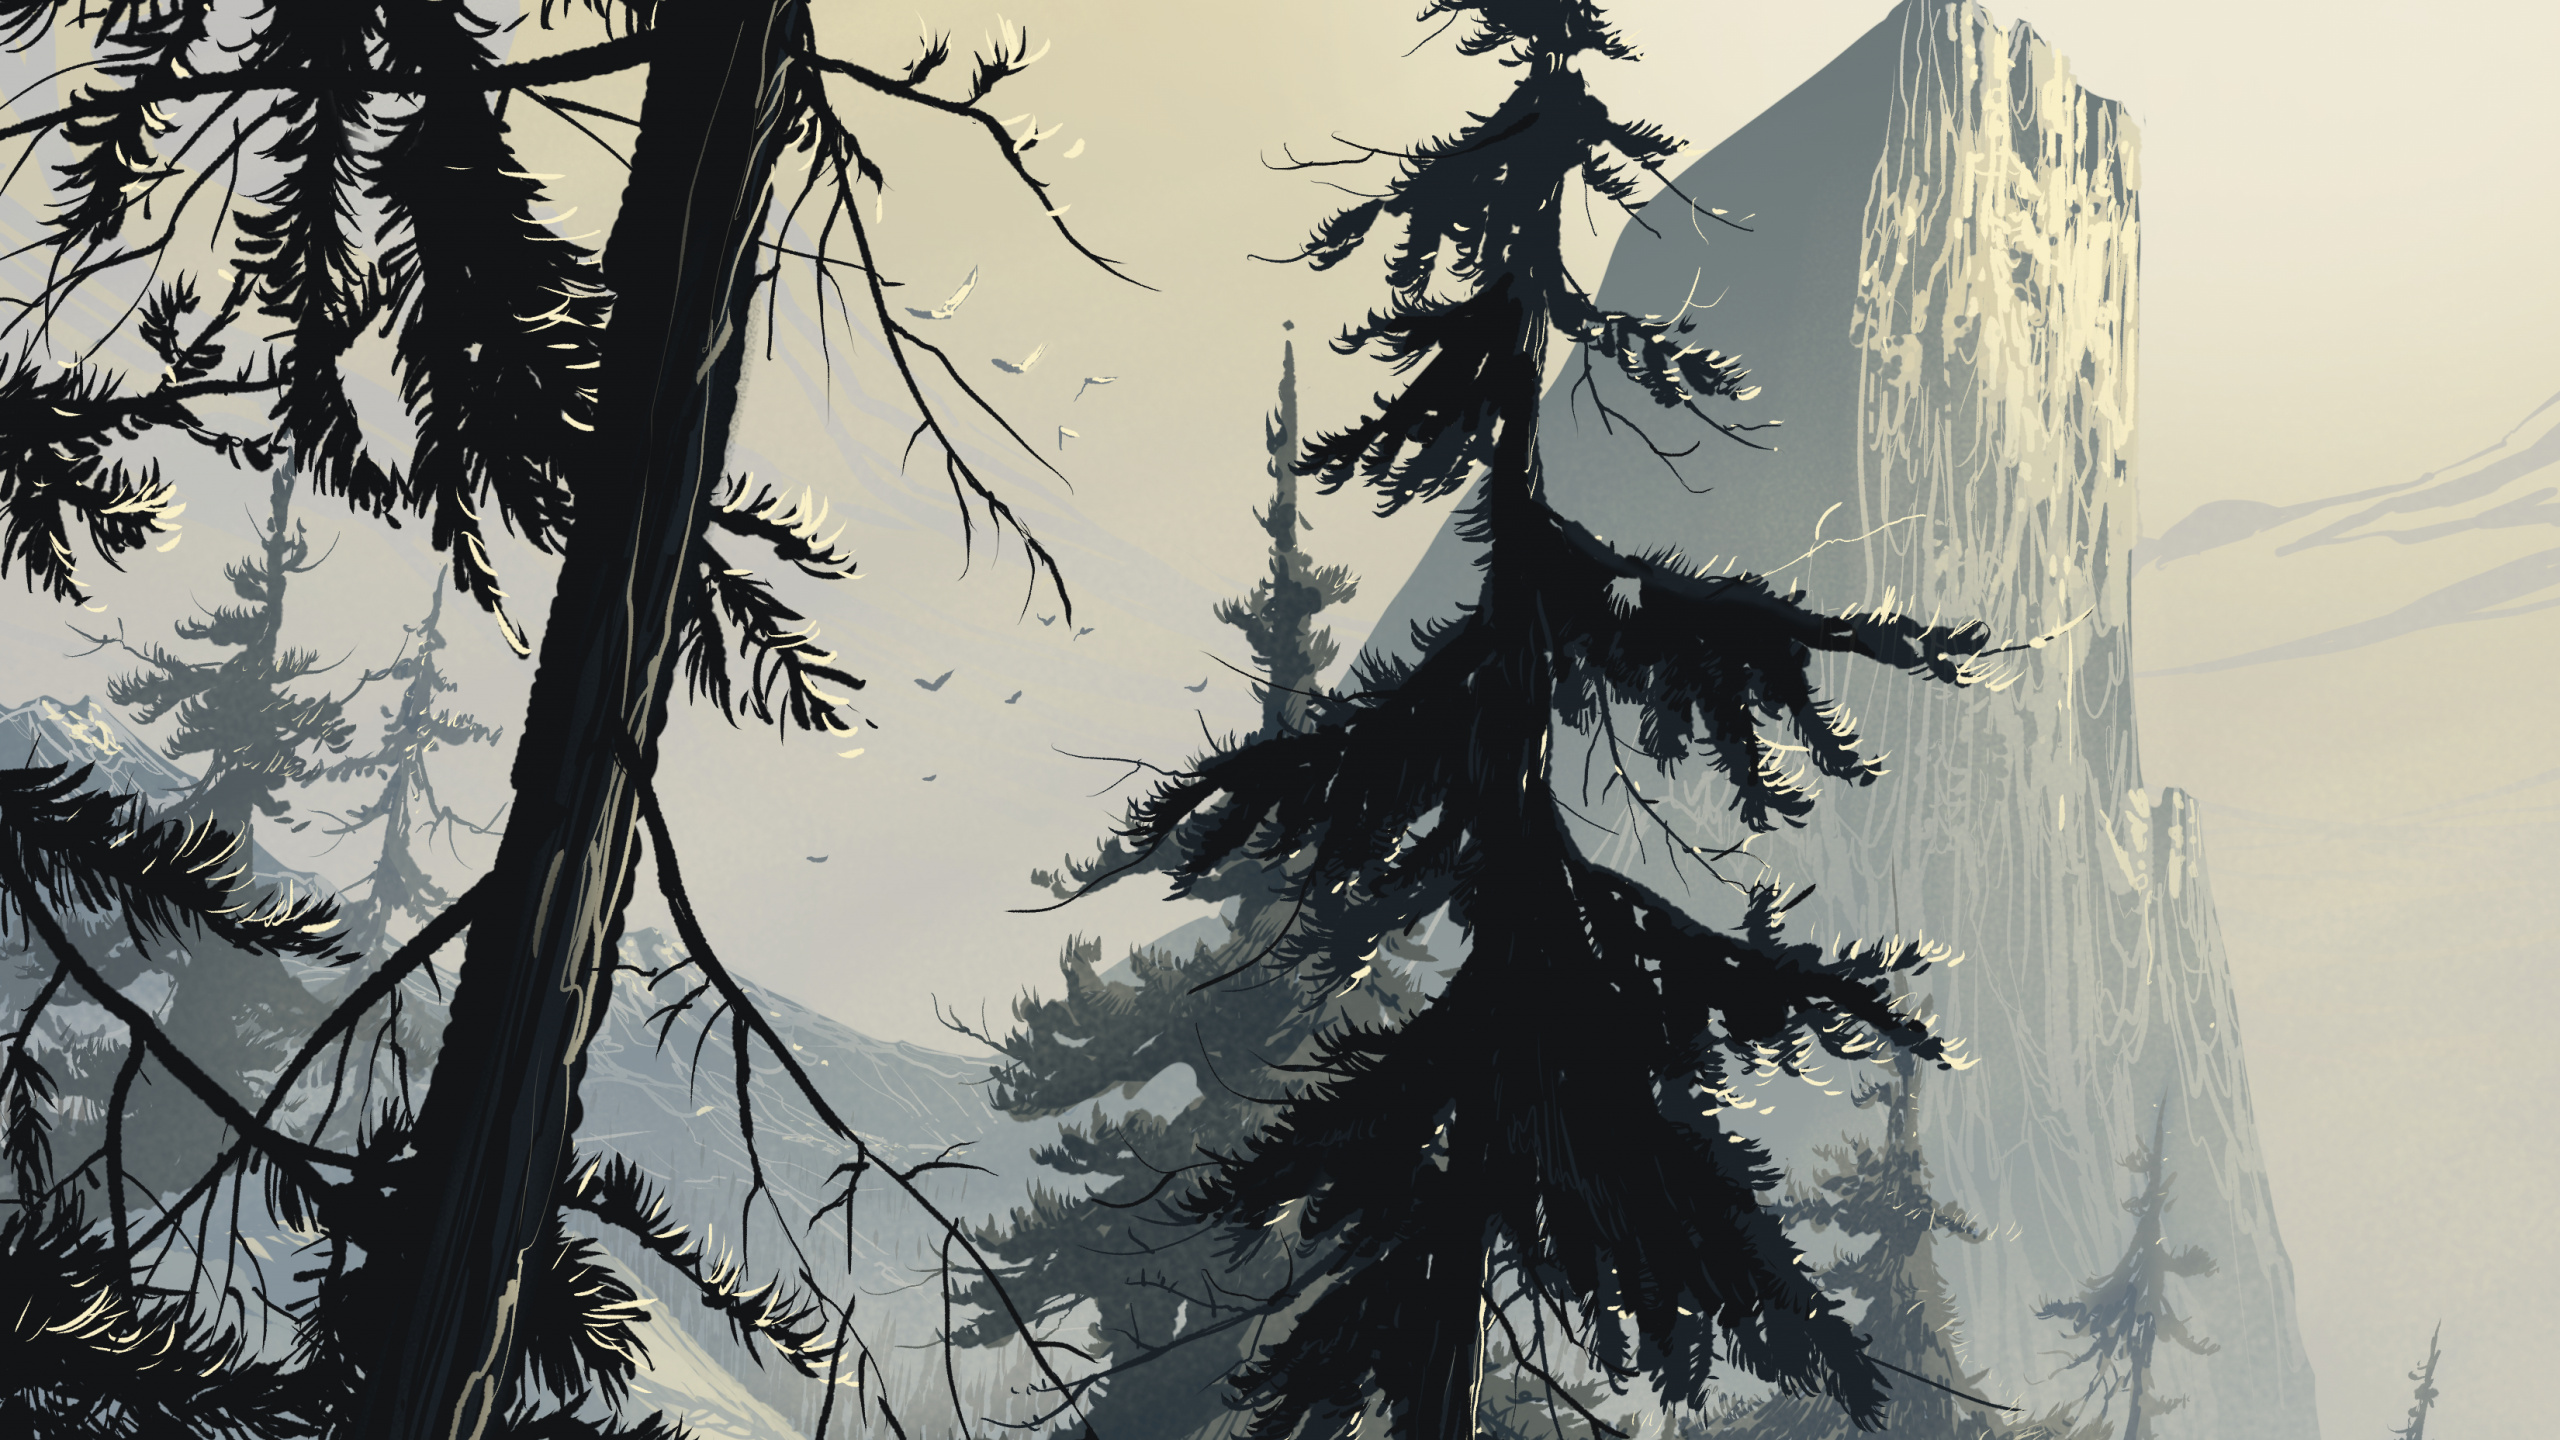 艺术, 云杉, 森林, 冬天, 木本植物 壁纸 2560x1440 允许